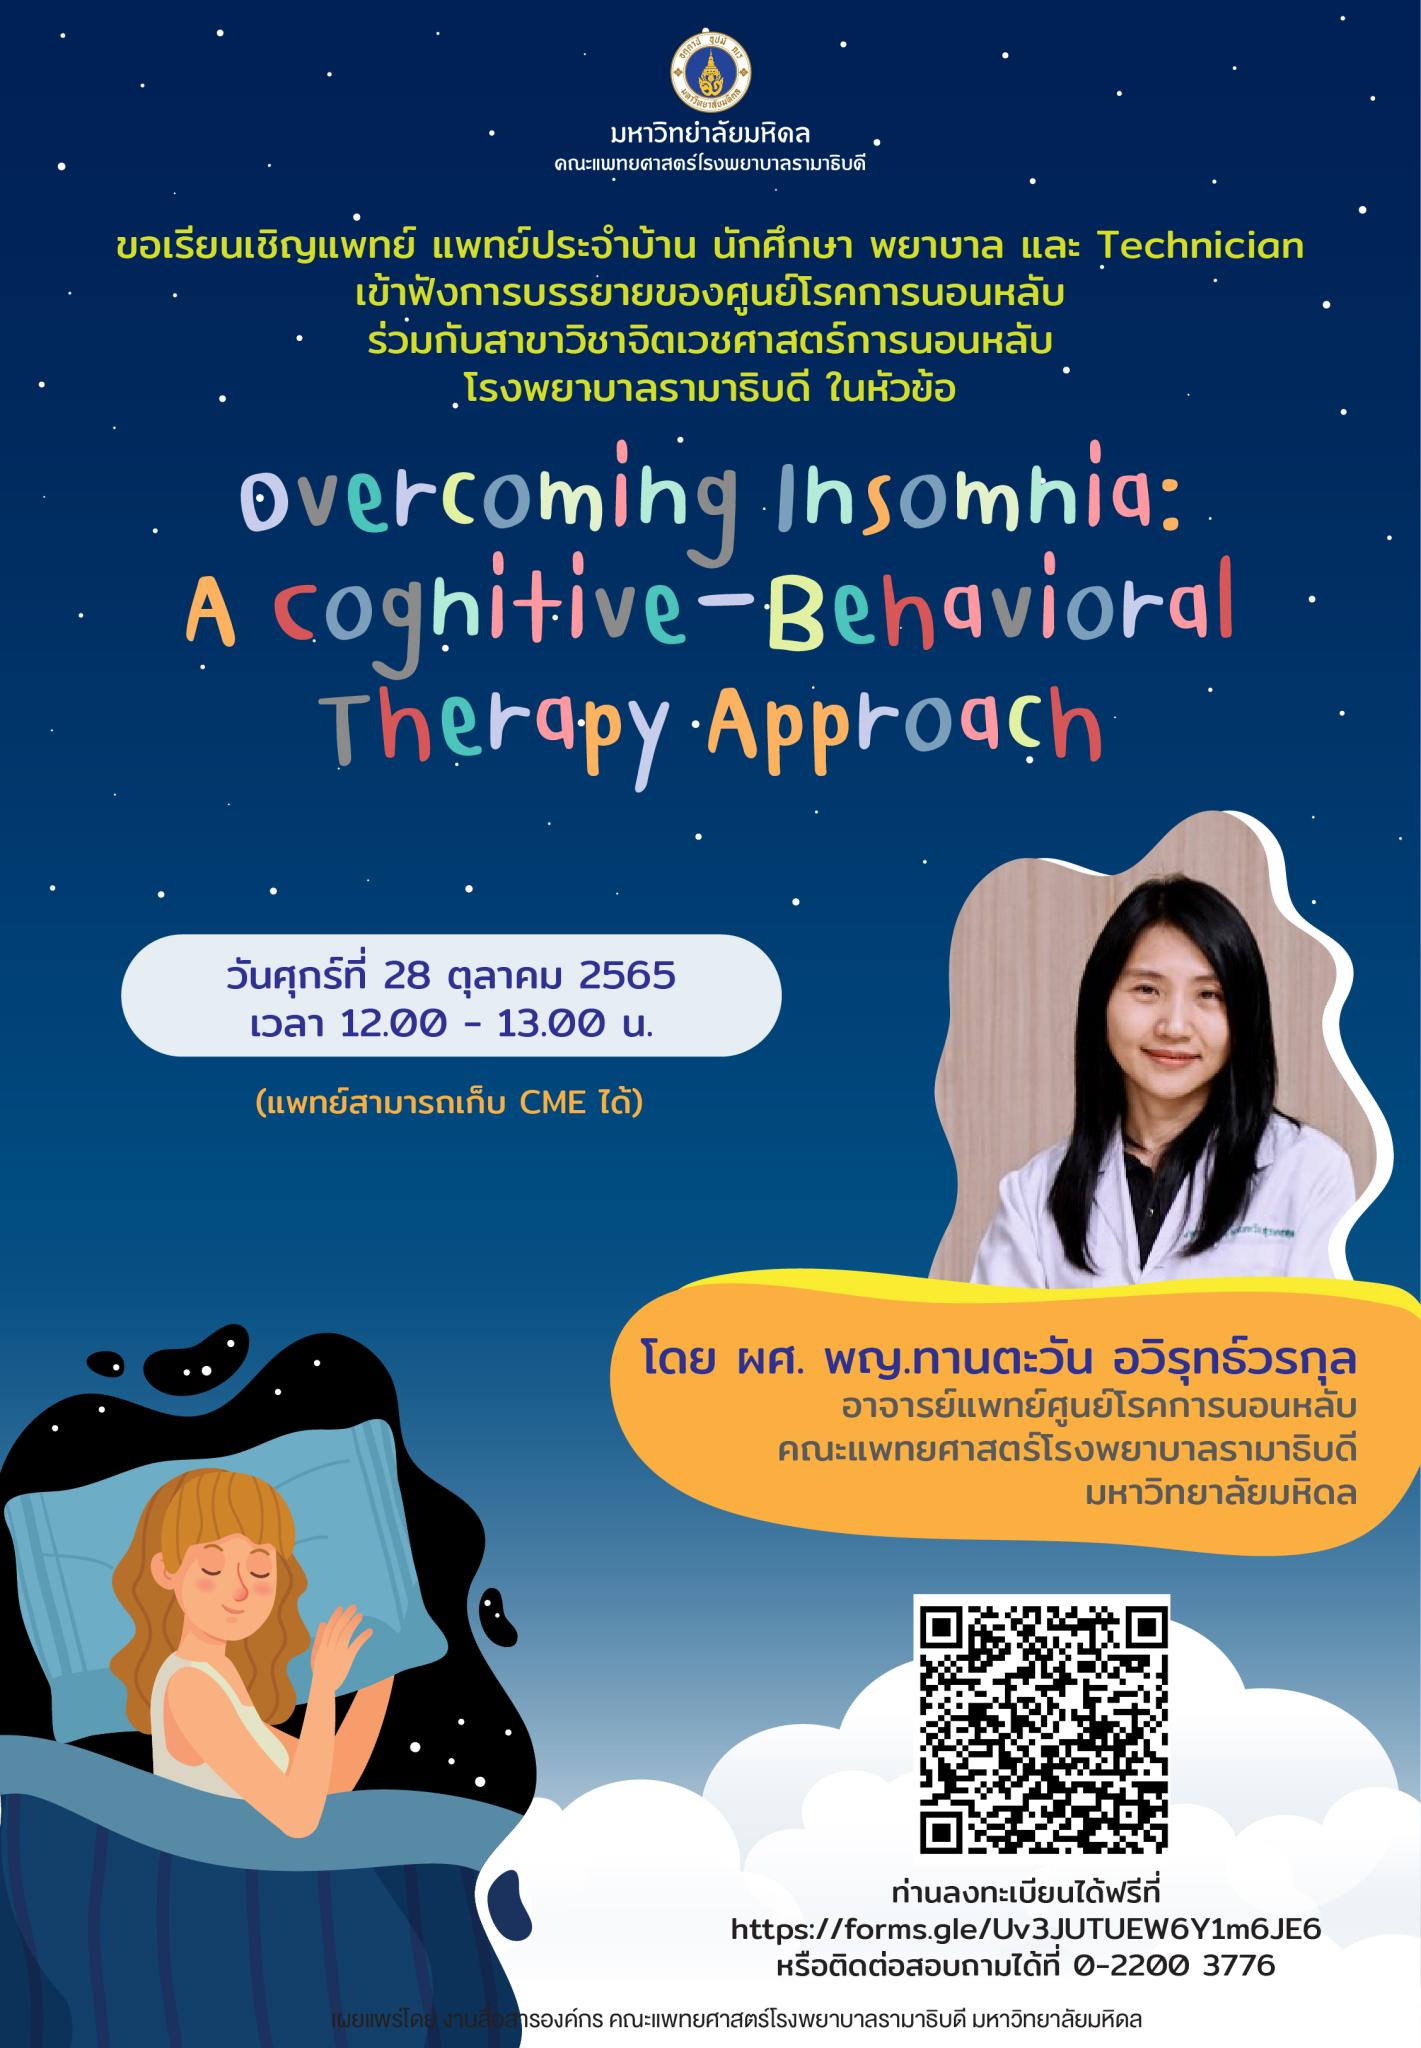 ขอเรียนเชิญเข้าฟังการบรรยายในหัวข้อ Overcoming Insomnia: A Cognitive-Behavioral Therapy Approach